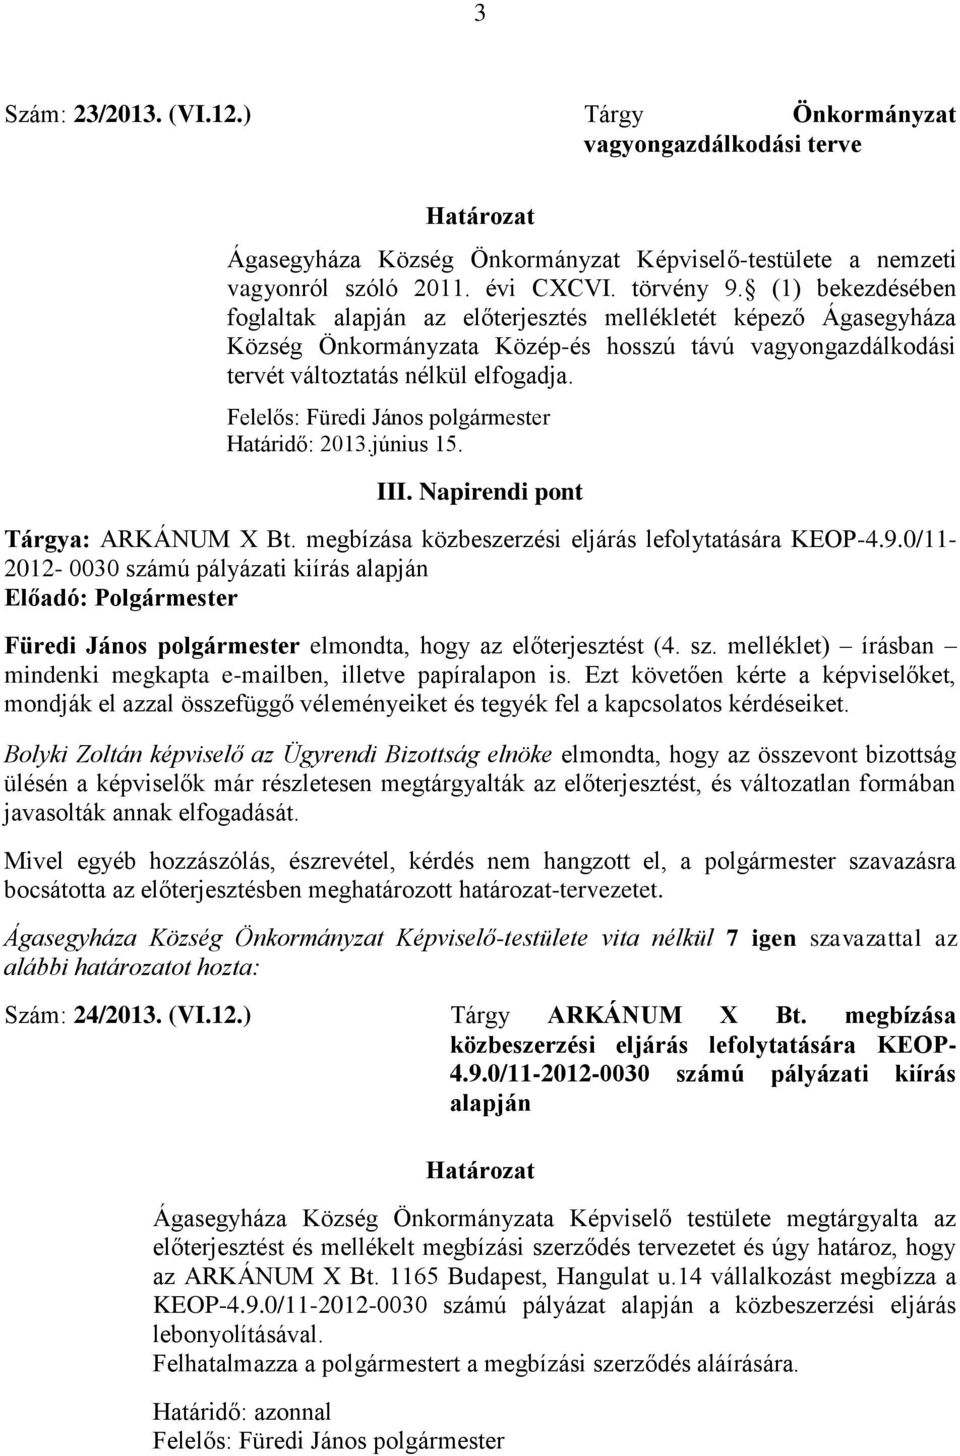 Felelős: Füredi János polgármester Határidő: 2013.június 15. III. Napirendi pont Tárgya: ARKÁNUM X Bt. megbízása közbeszerzési eljárás lefolytatására KEOP-4.9.